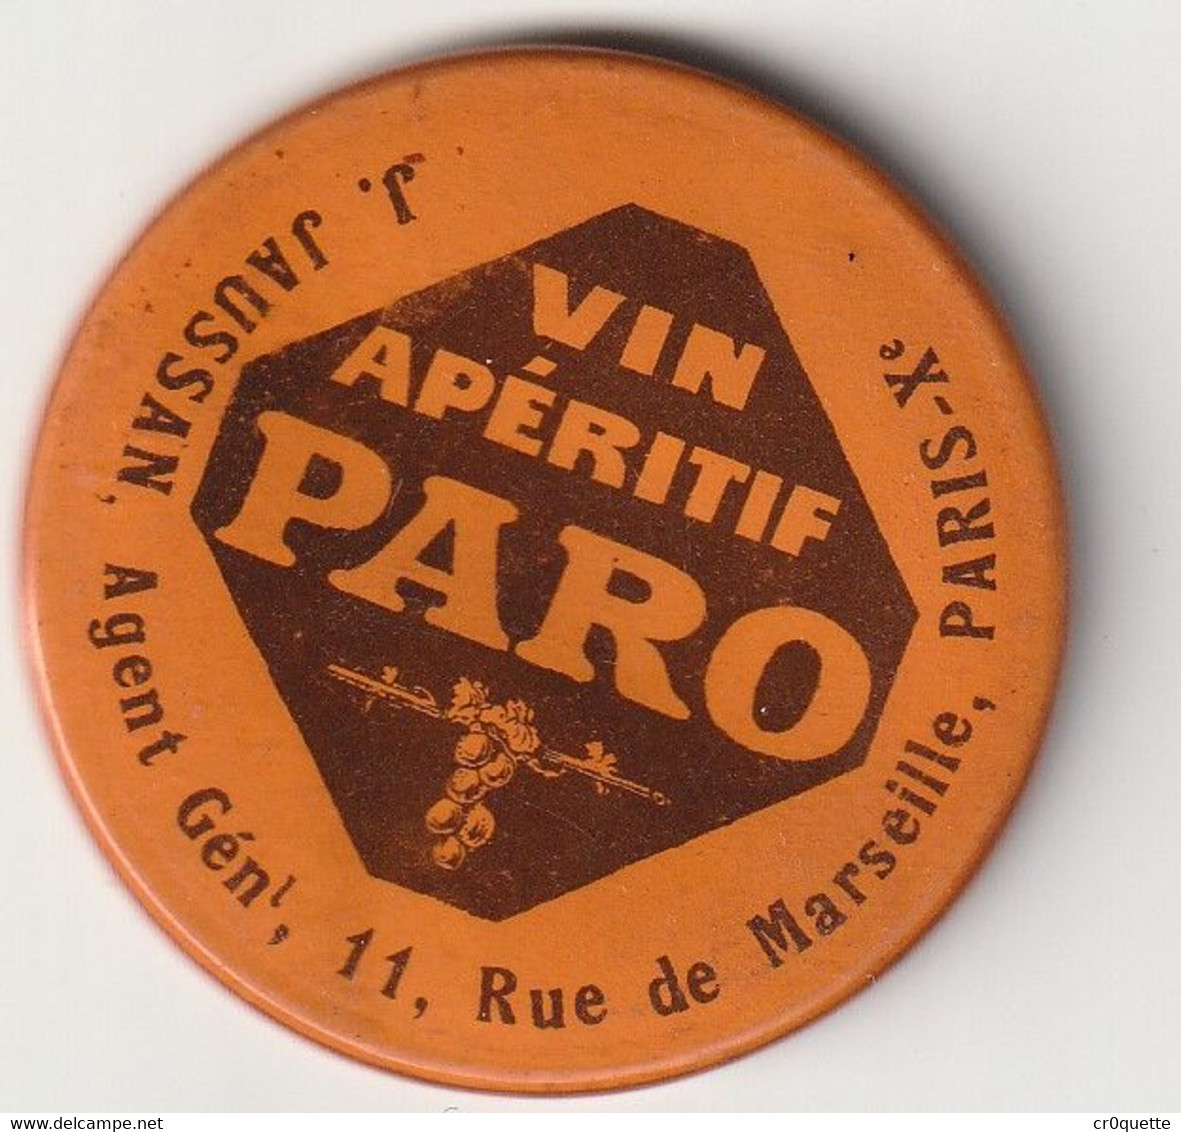 VIN APERITIF PARO / VIEUX PETIT MIROIR PUBLICITAIRE - Alcohols